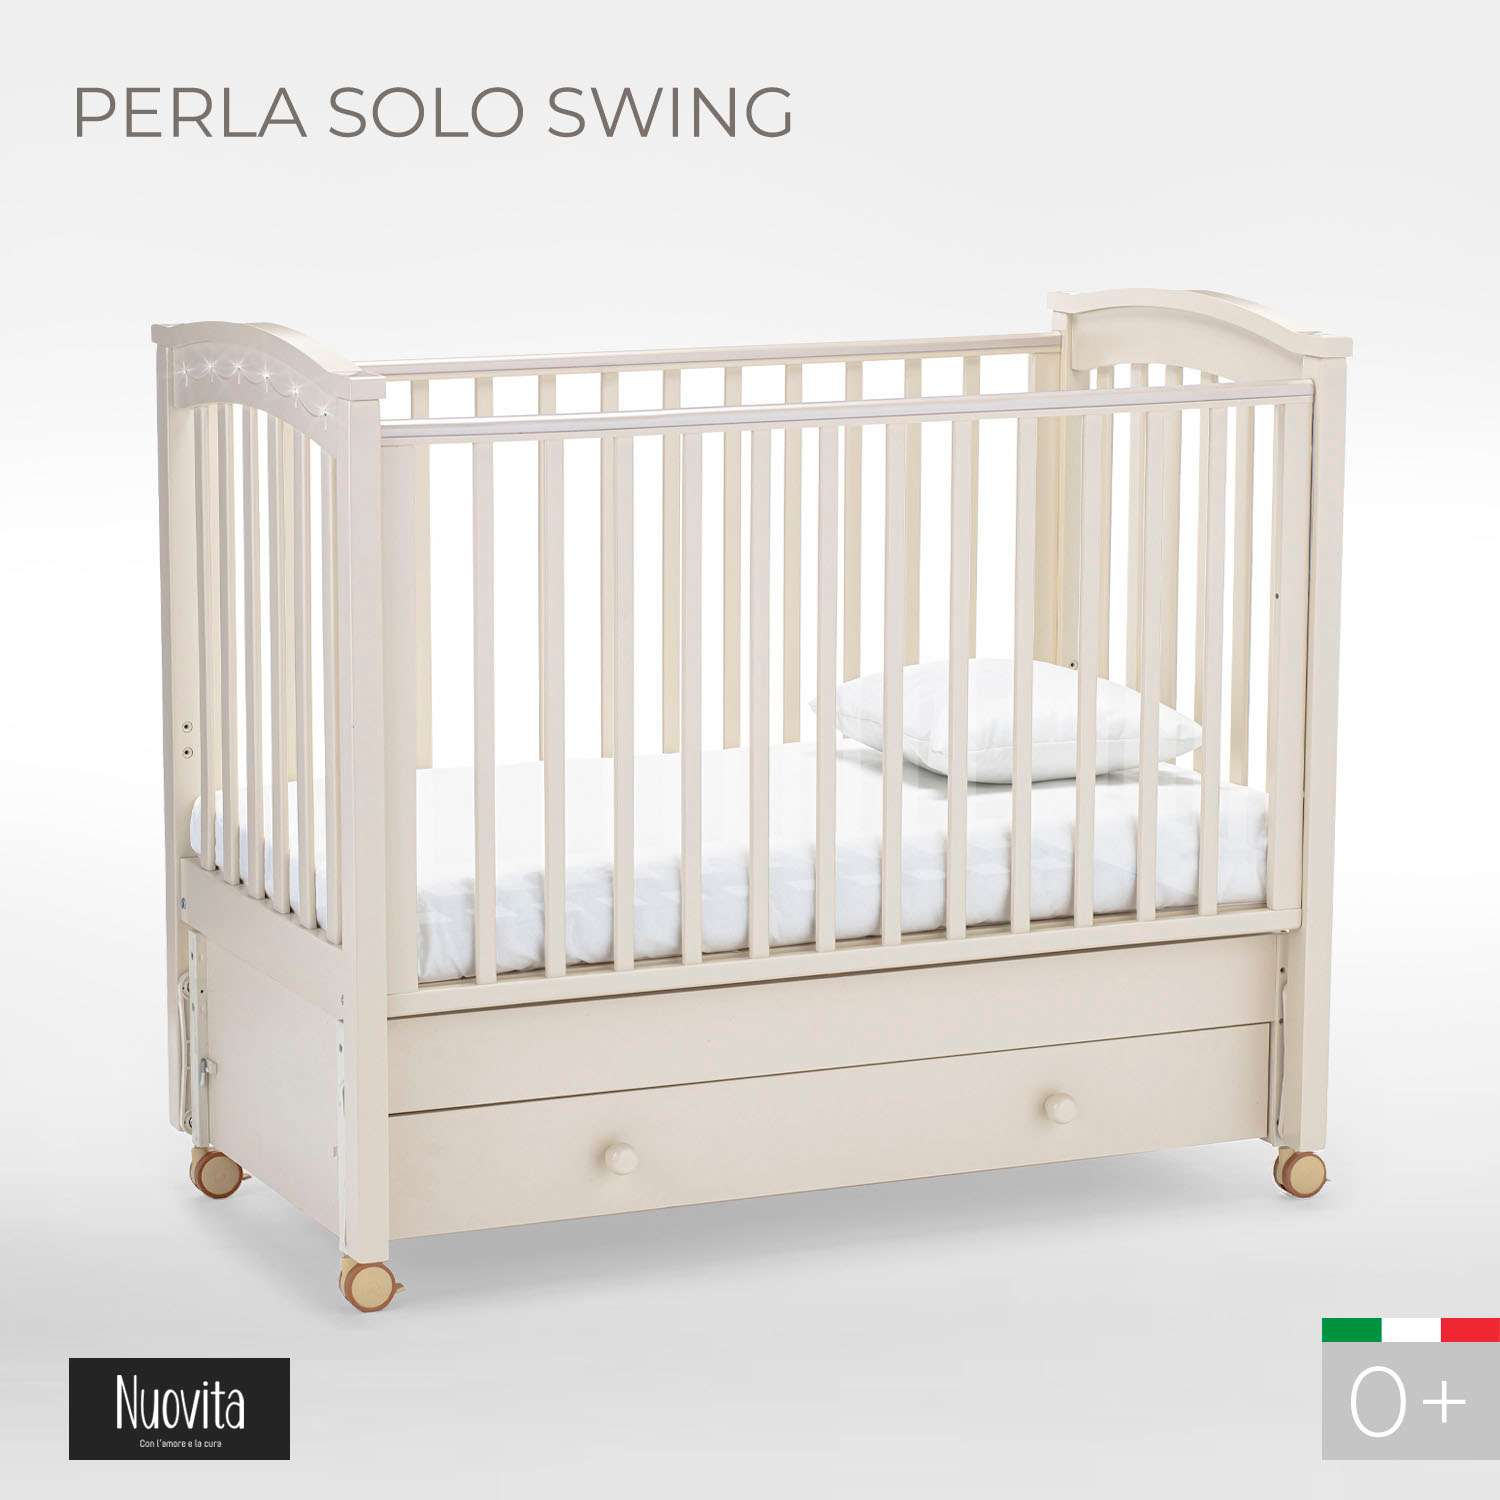 Детская кроватка Nuovita Perla Solo Swing прямоугольная, продольный маятник (слоновая кость) - фото 2